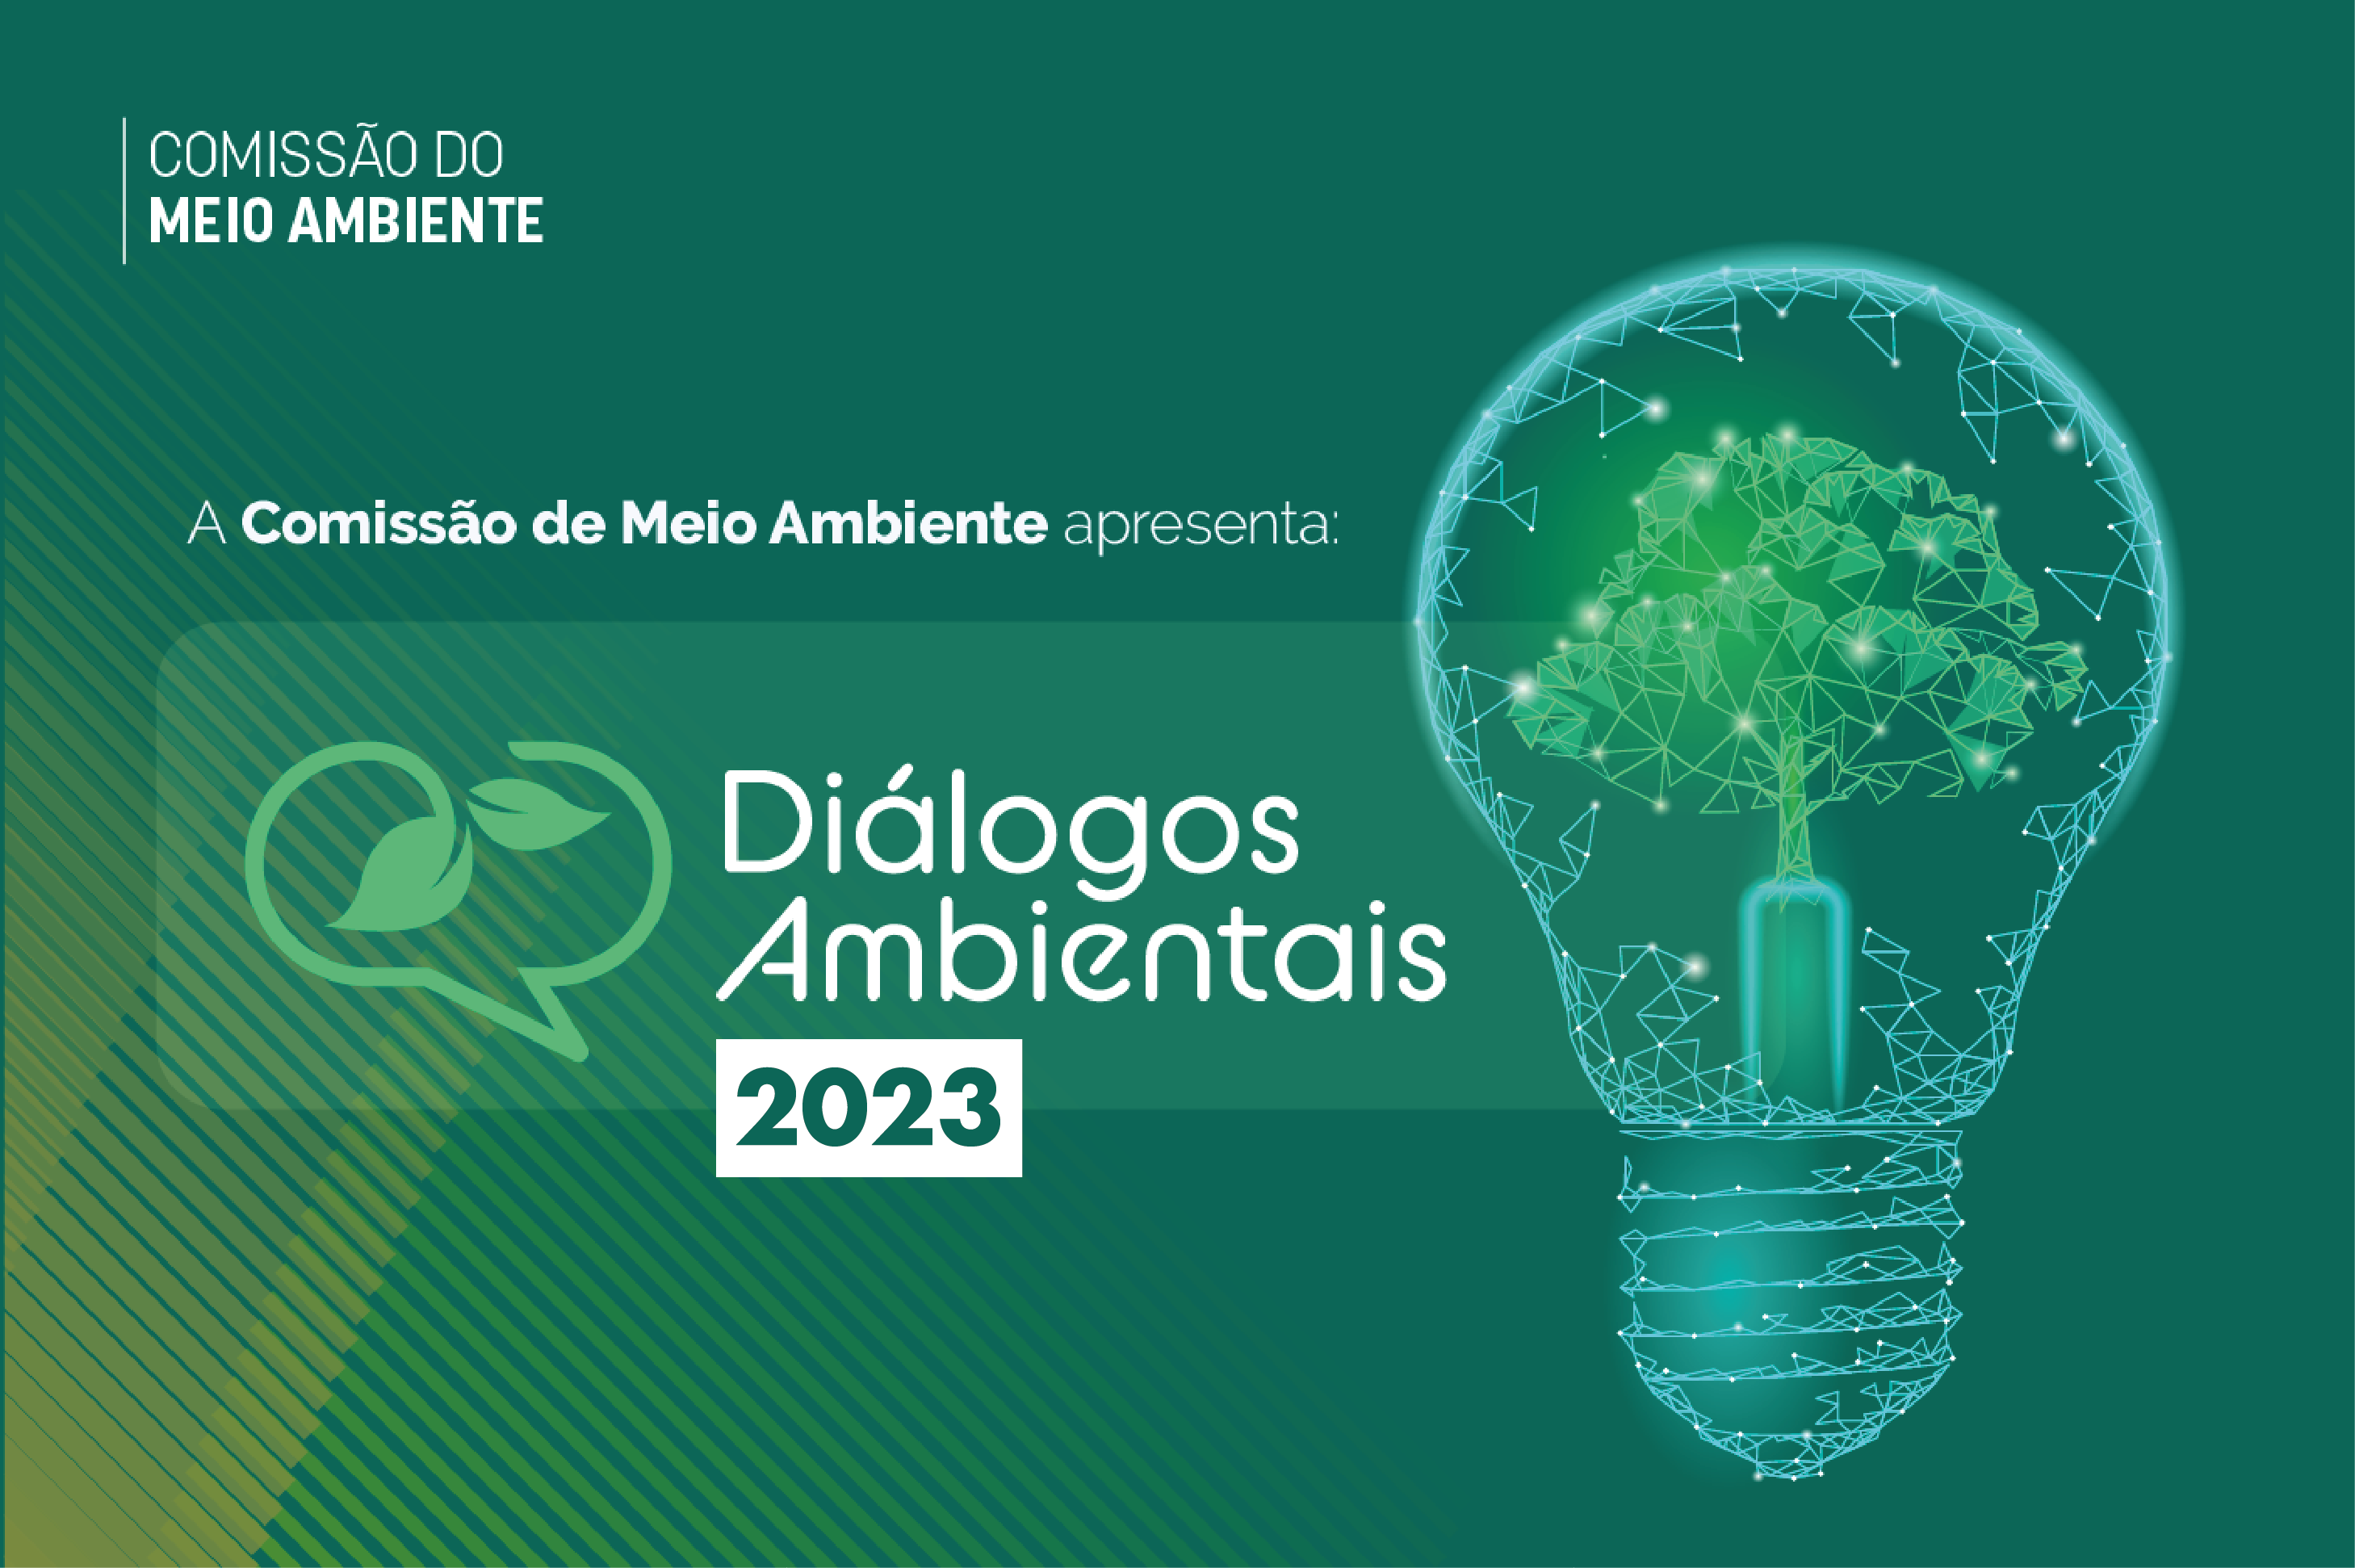 Banner_noticia_dialogos_ambientais_2023_Prancheta_1_cpia.png - 525,35 kB